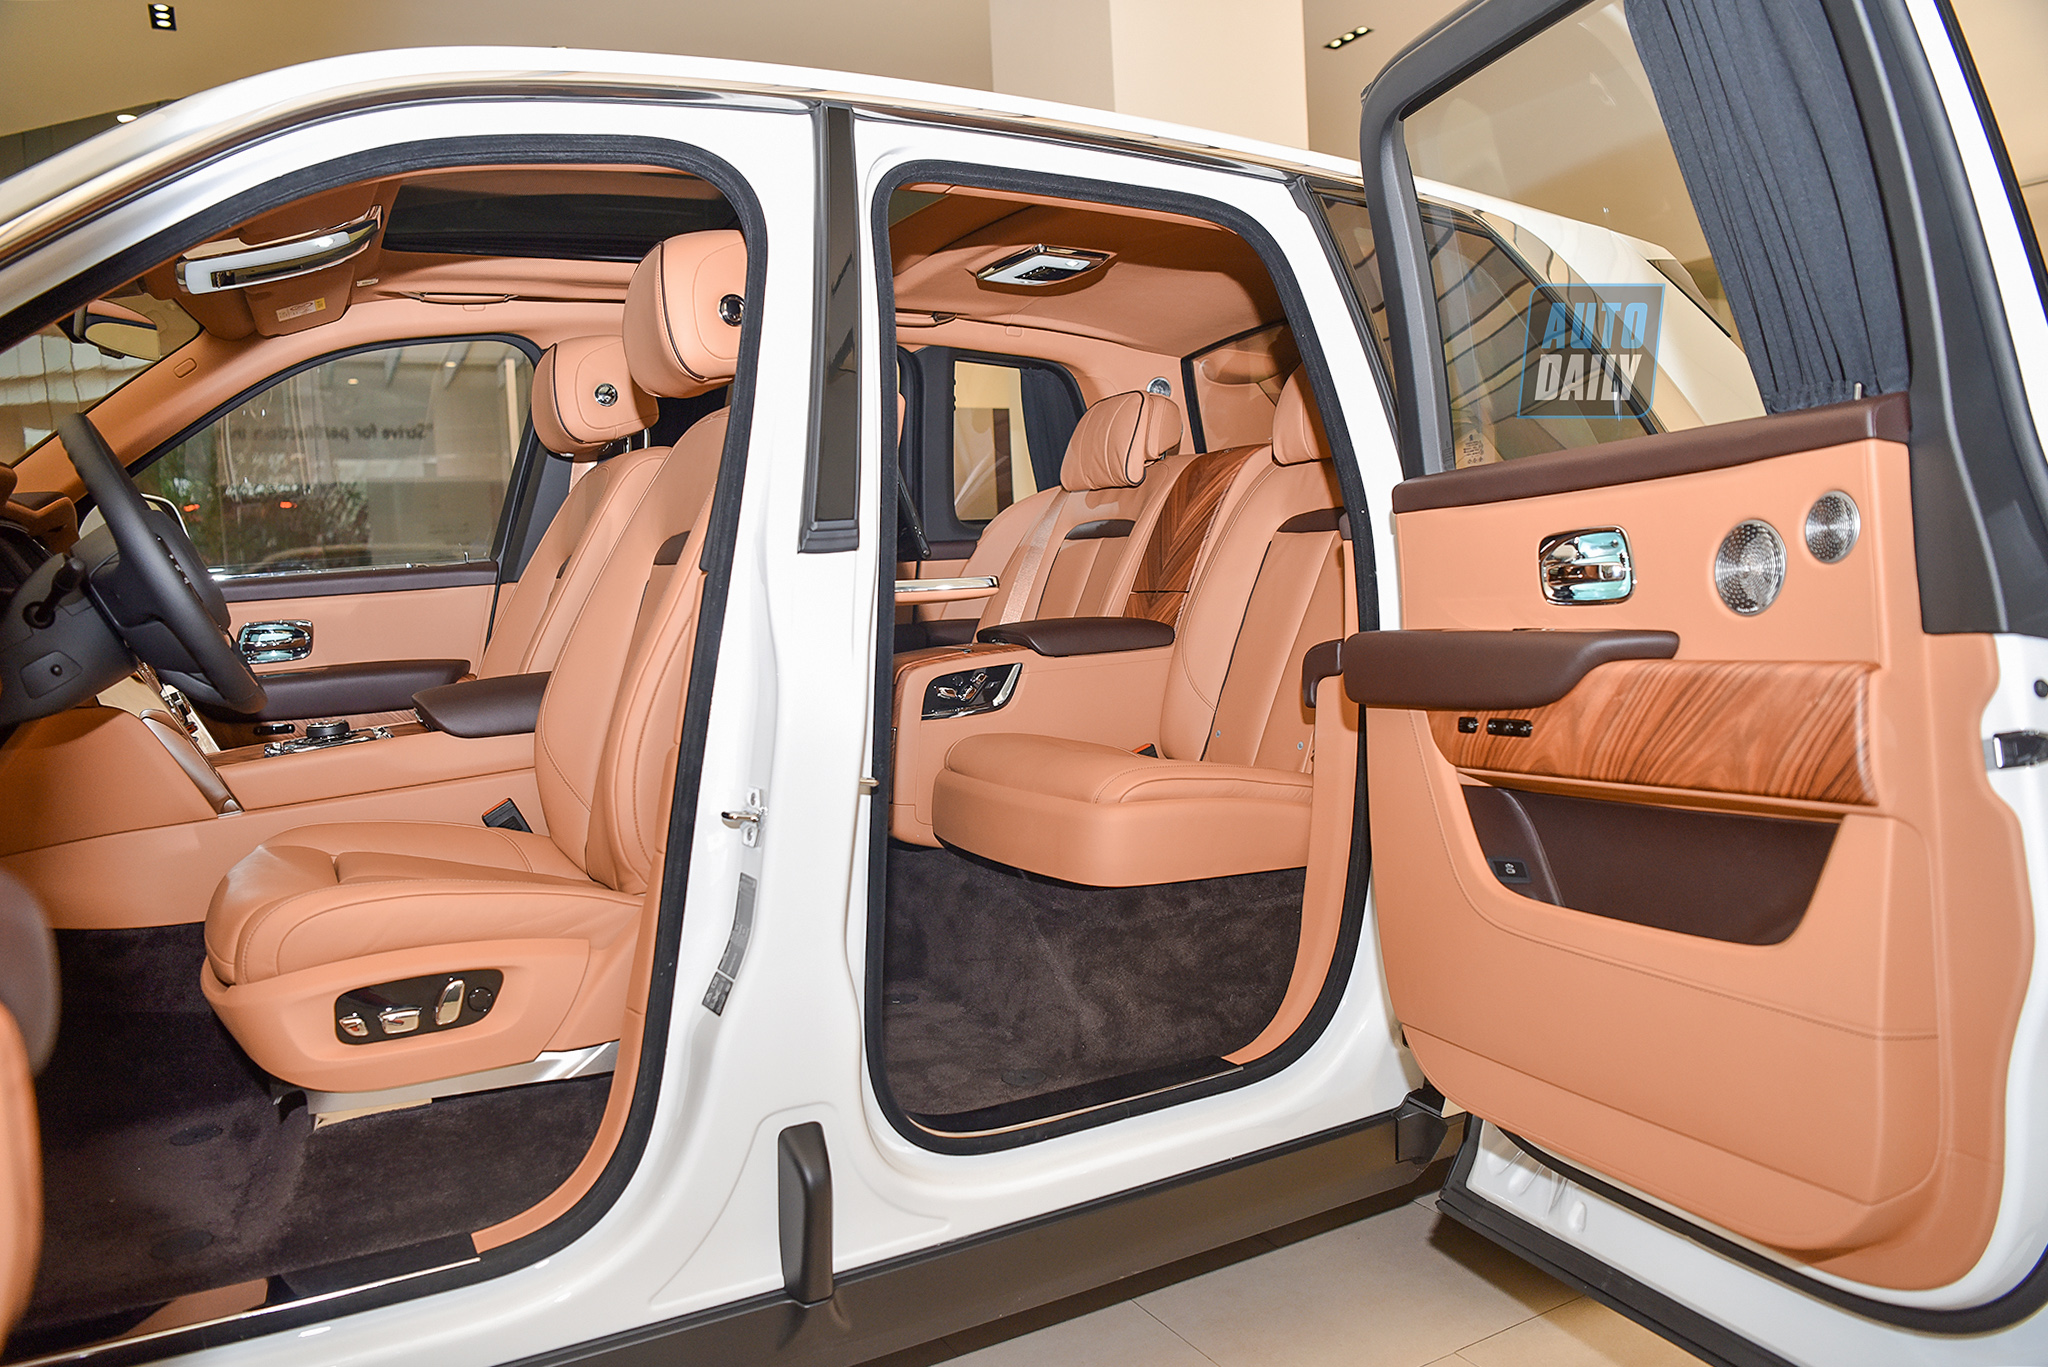 SUV Siêu sang Rolls-Royce Cullinan hơn 40 tỷ của đại gia Hà Tĩnh Rolls-Royce Cullinan 2020 giá từ 32 tỷ: SUV siêu sang chính hãng đắt nhất Việt Nam 1.jpg